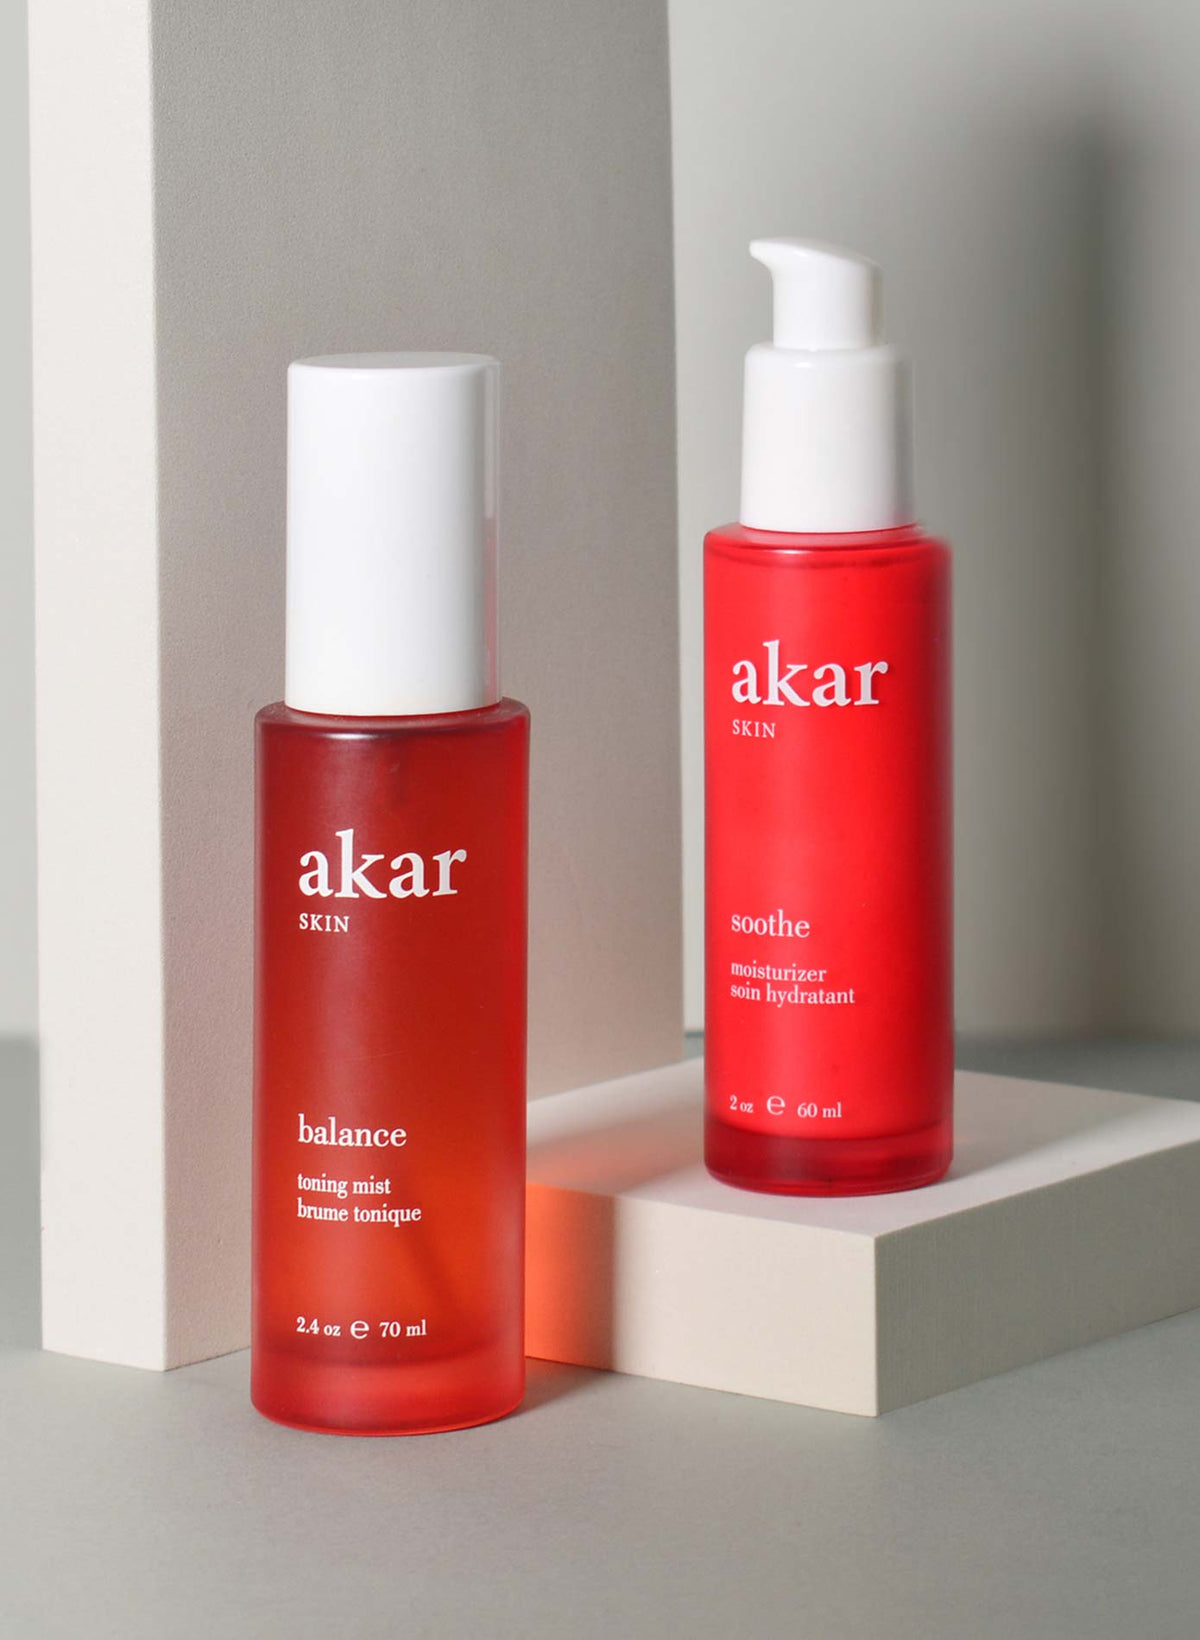 Akar Skin, Fresh Rose Duo, Balance Toner, Soothe Moisturizer, skincare products, bottles, lifestyle photography